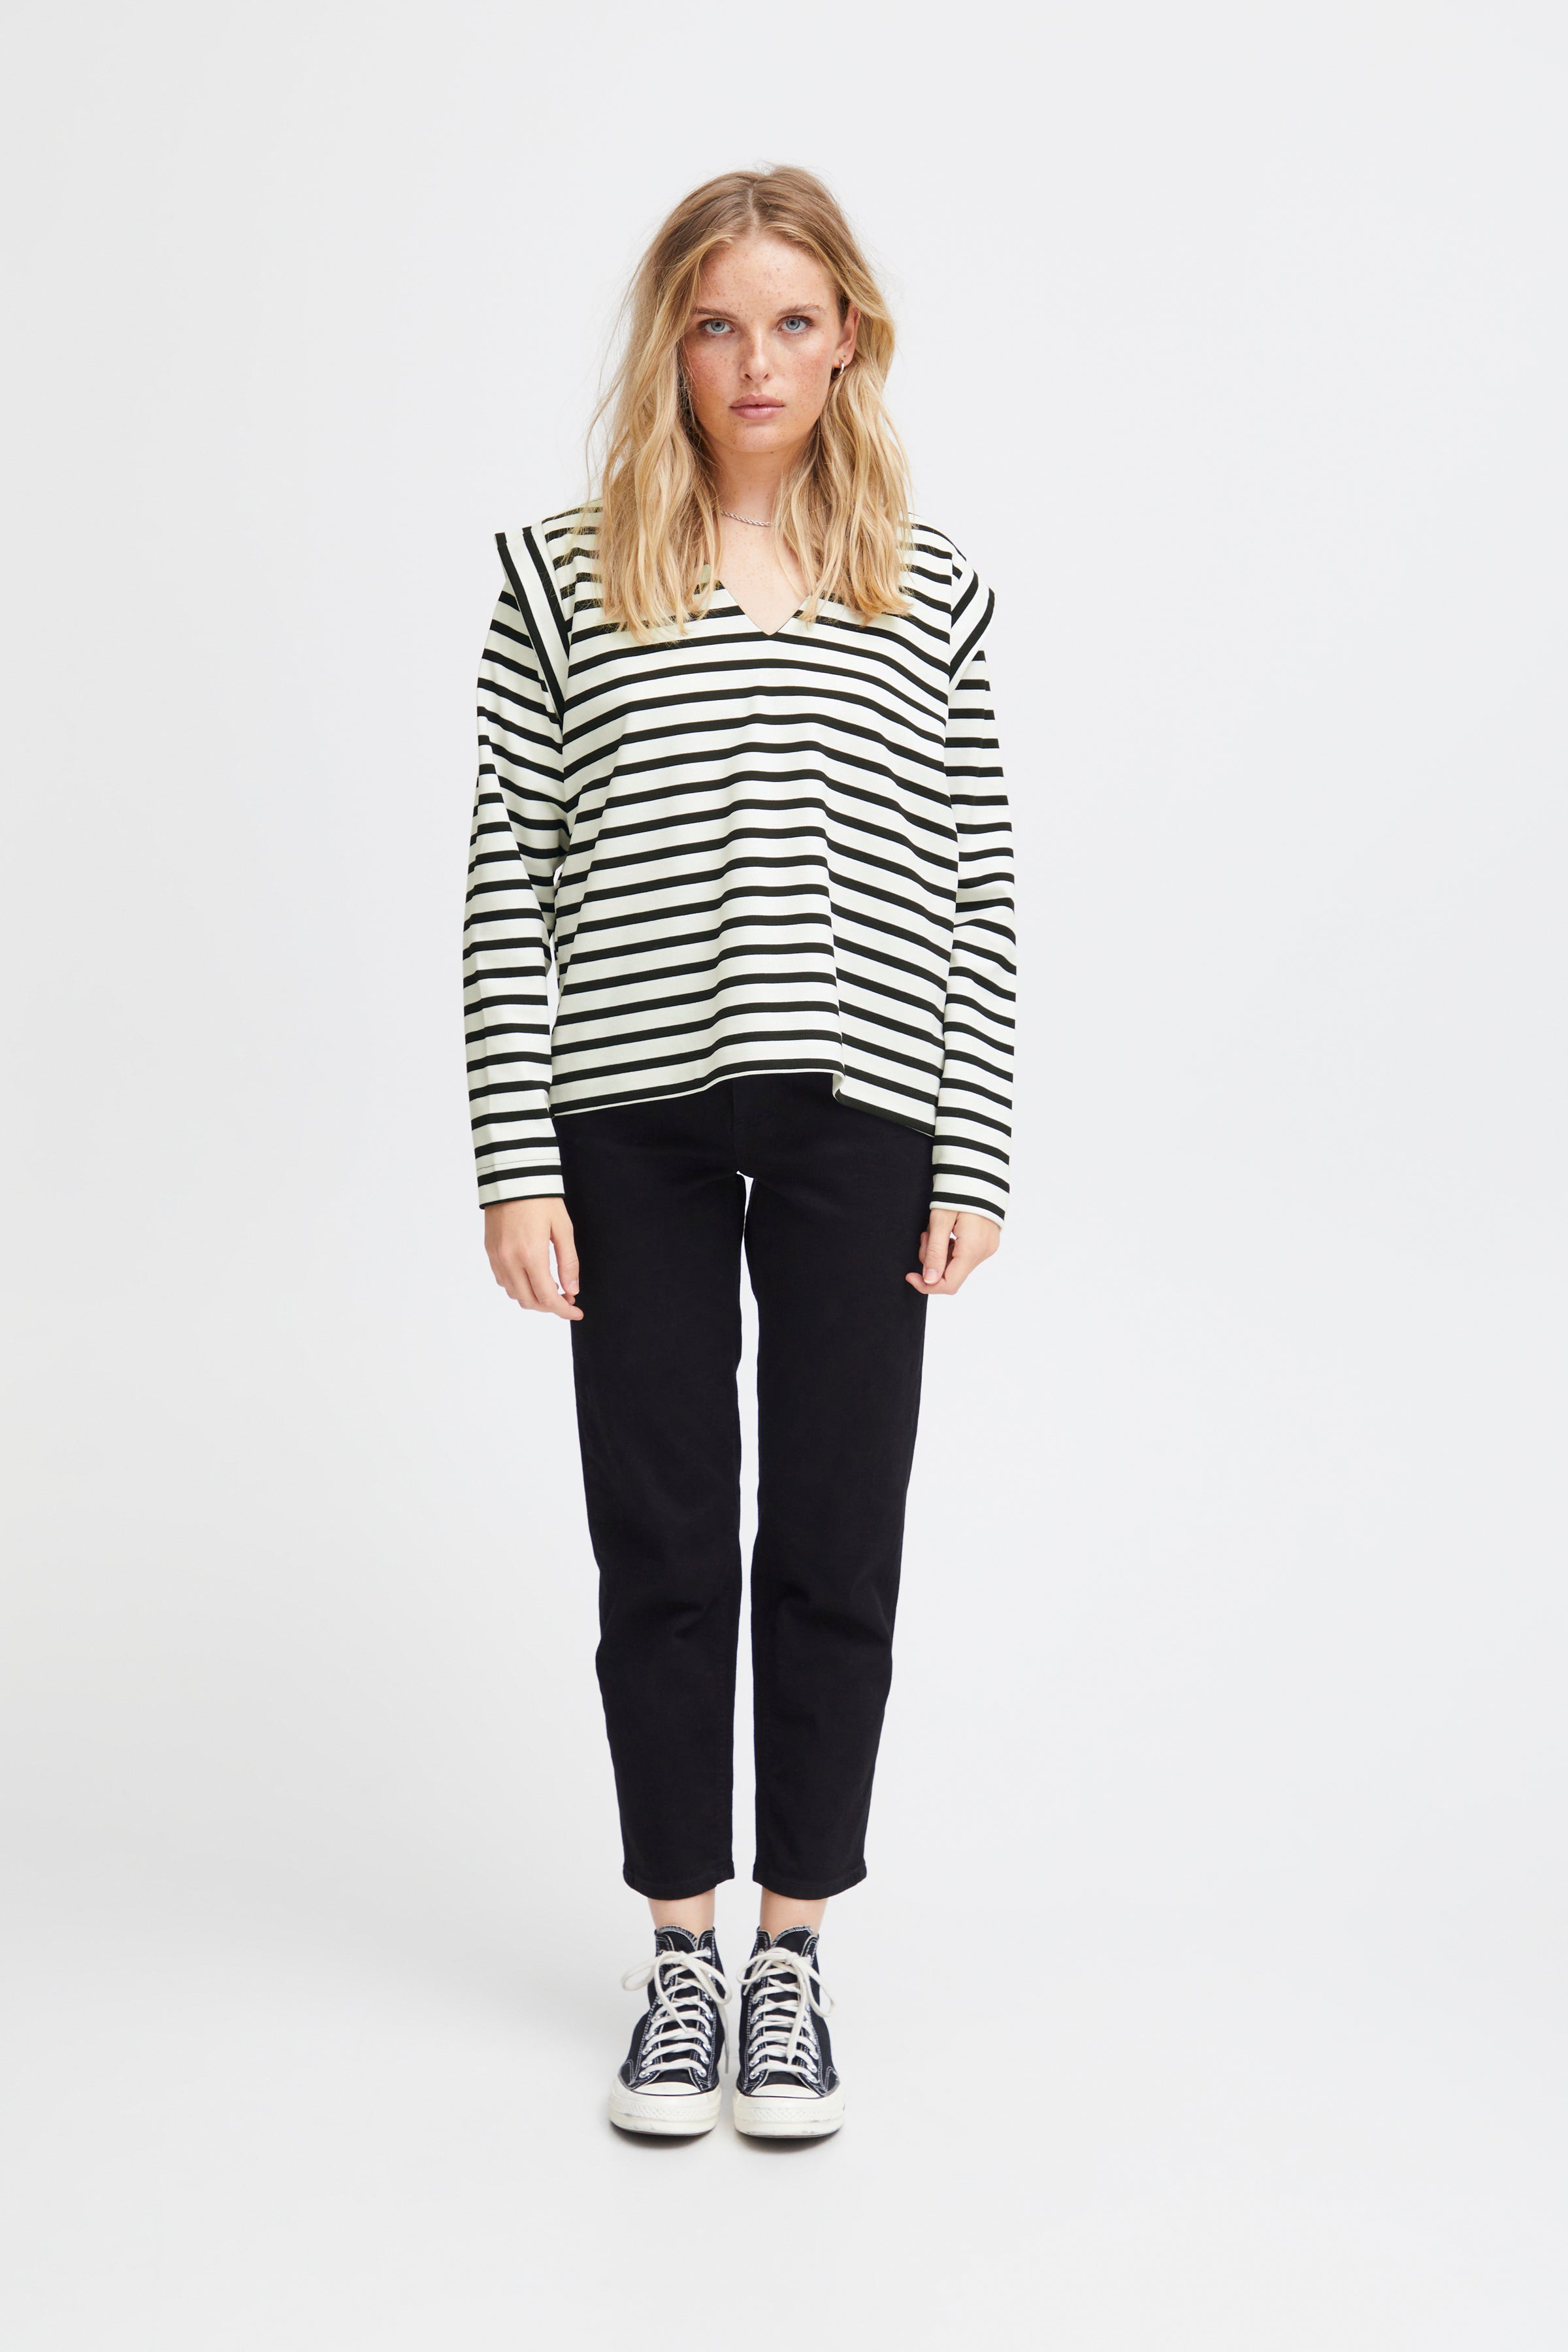 Itira Sweatshirt in Black and White Stripe